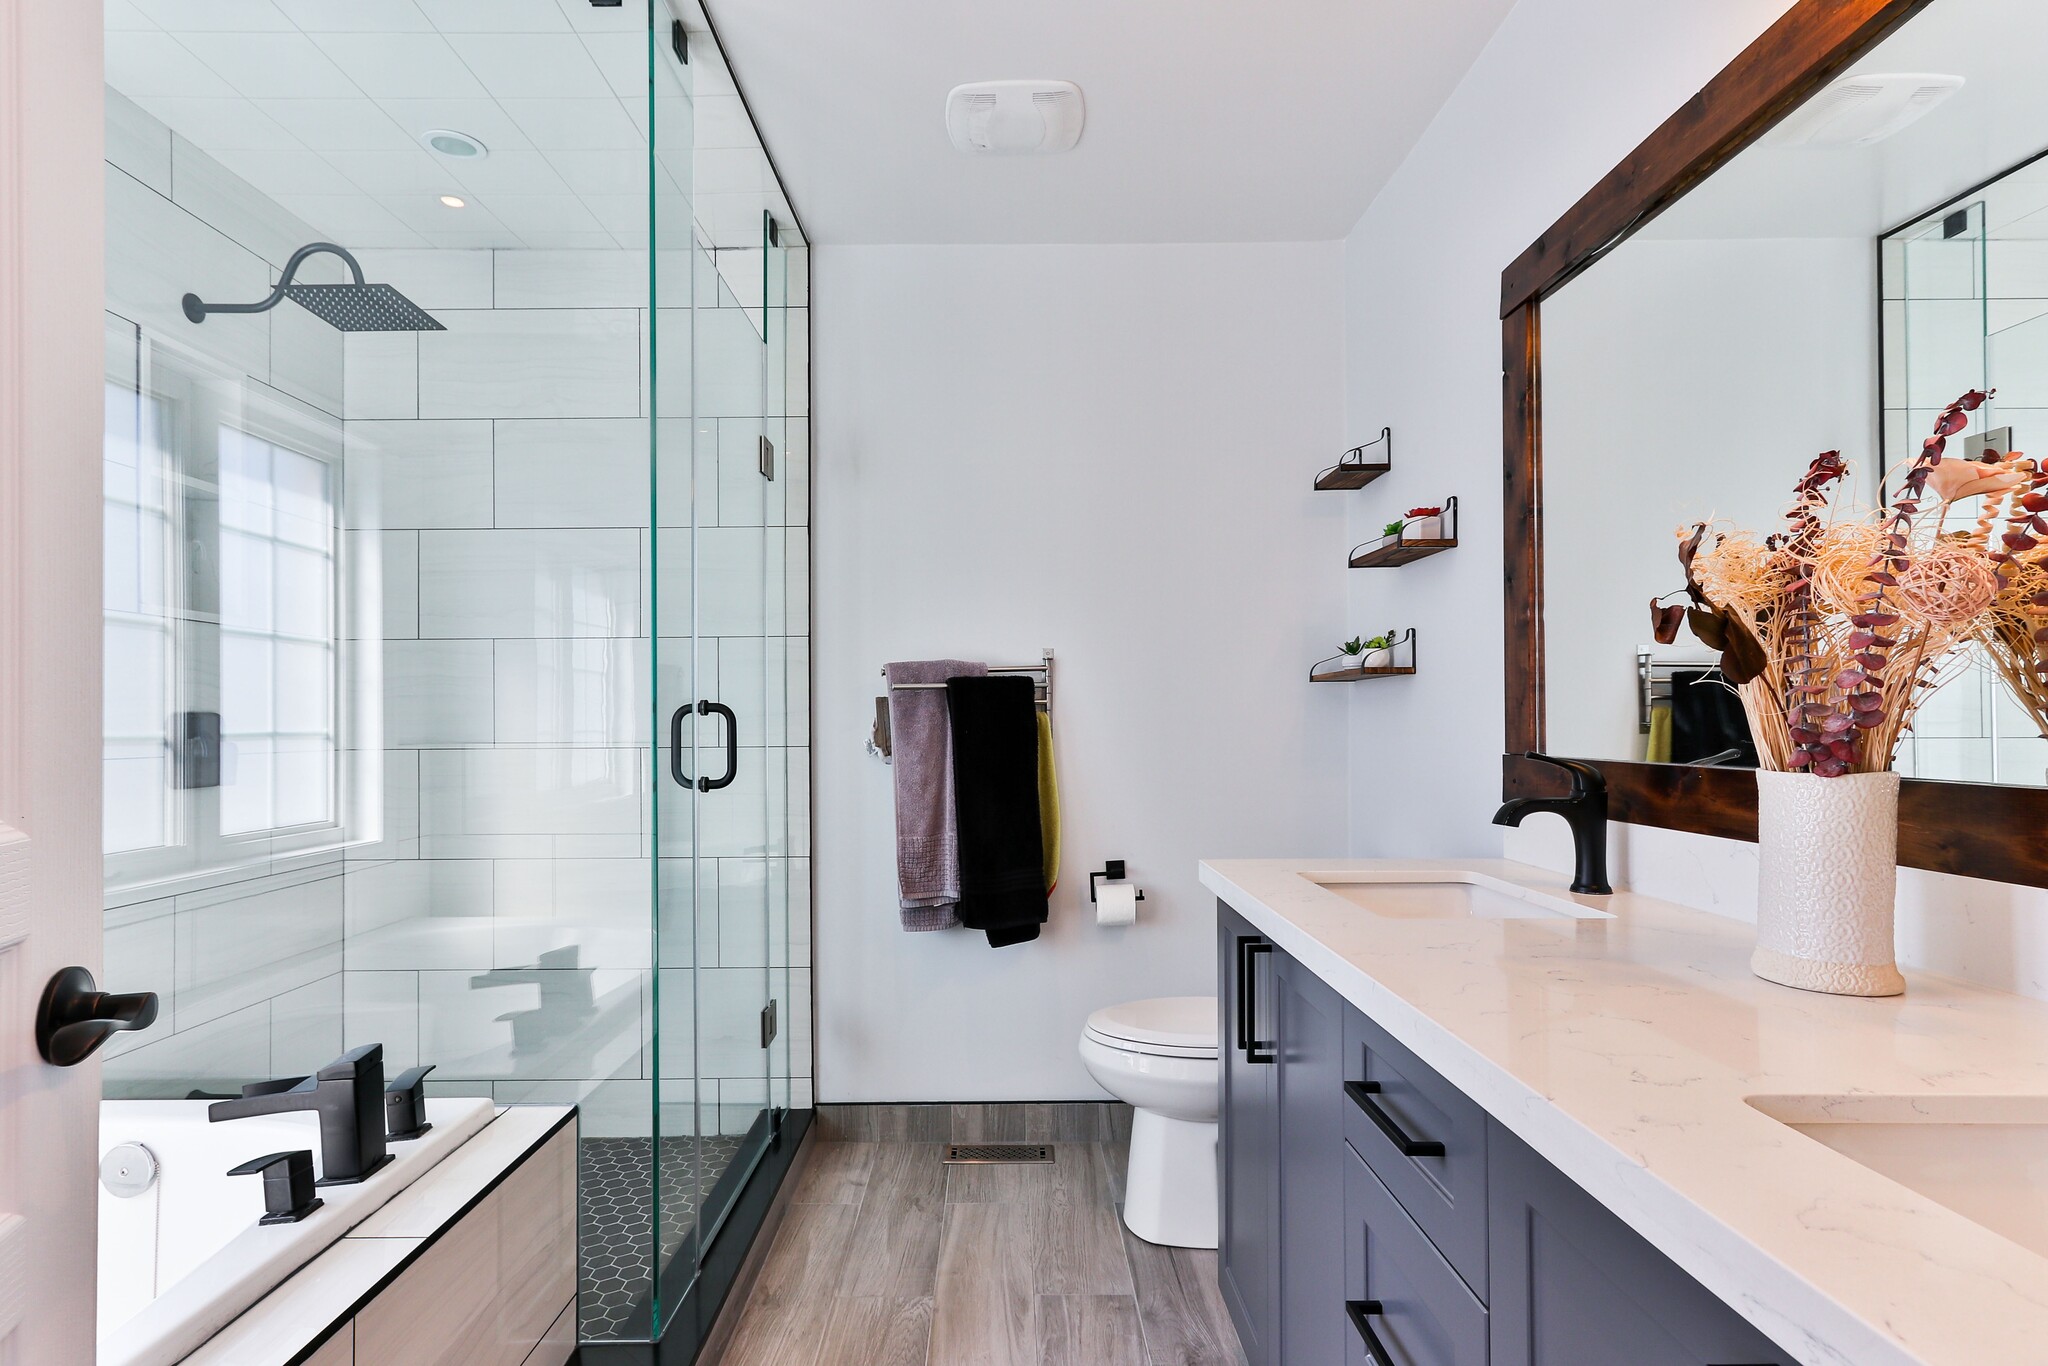 Een blinkend schone badkamer: 5 tips